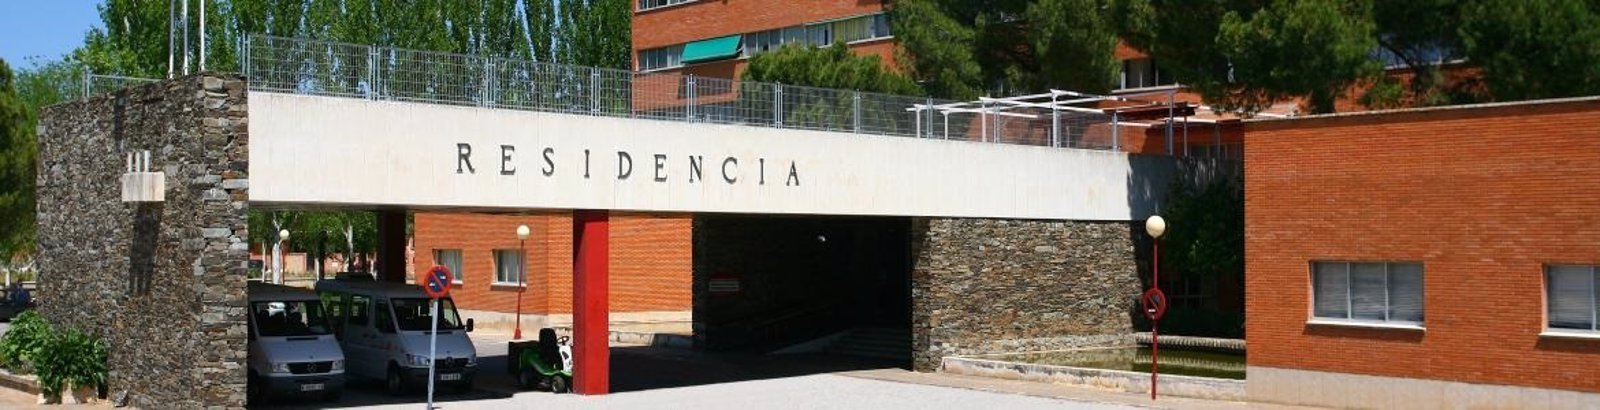 El Ayuntamiento de Alcalá acusa a la residencia Francisco de Vitoria de impedir la entrada a una inspección y la Comunidad lo niega